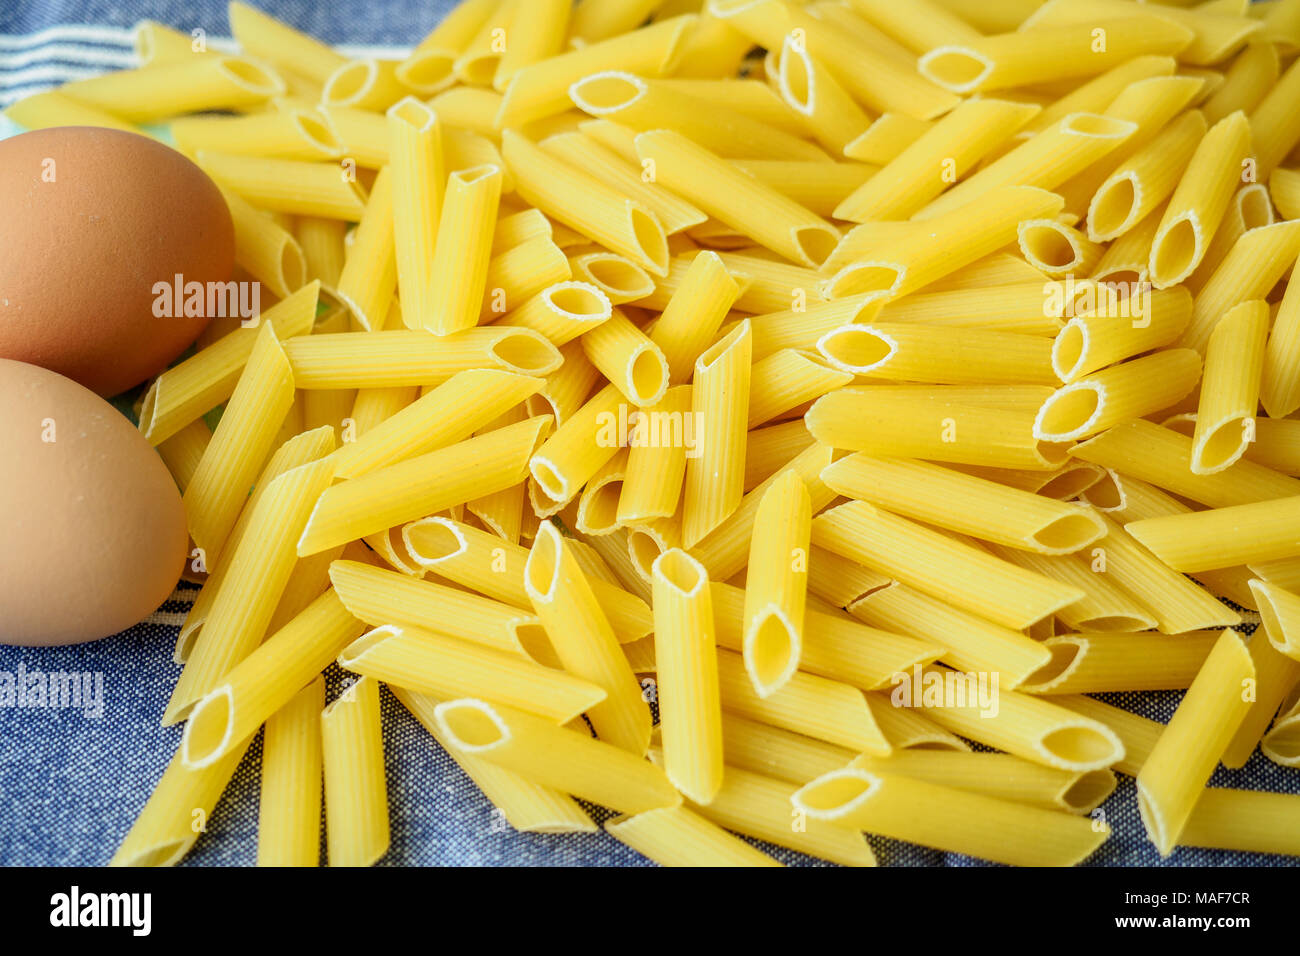 Rohes Ei Nudeln. Italienische Nudeln getrocknet Stockfoto